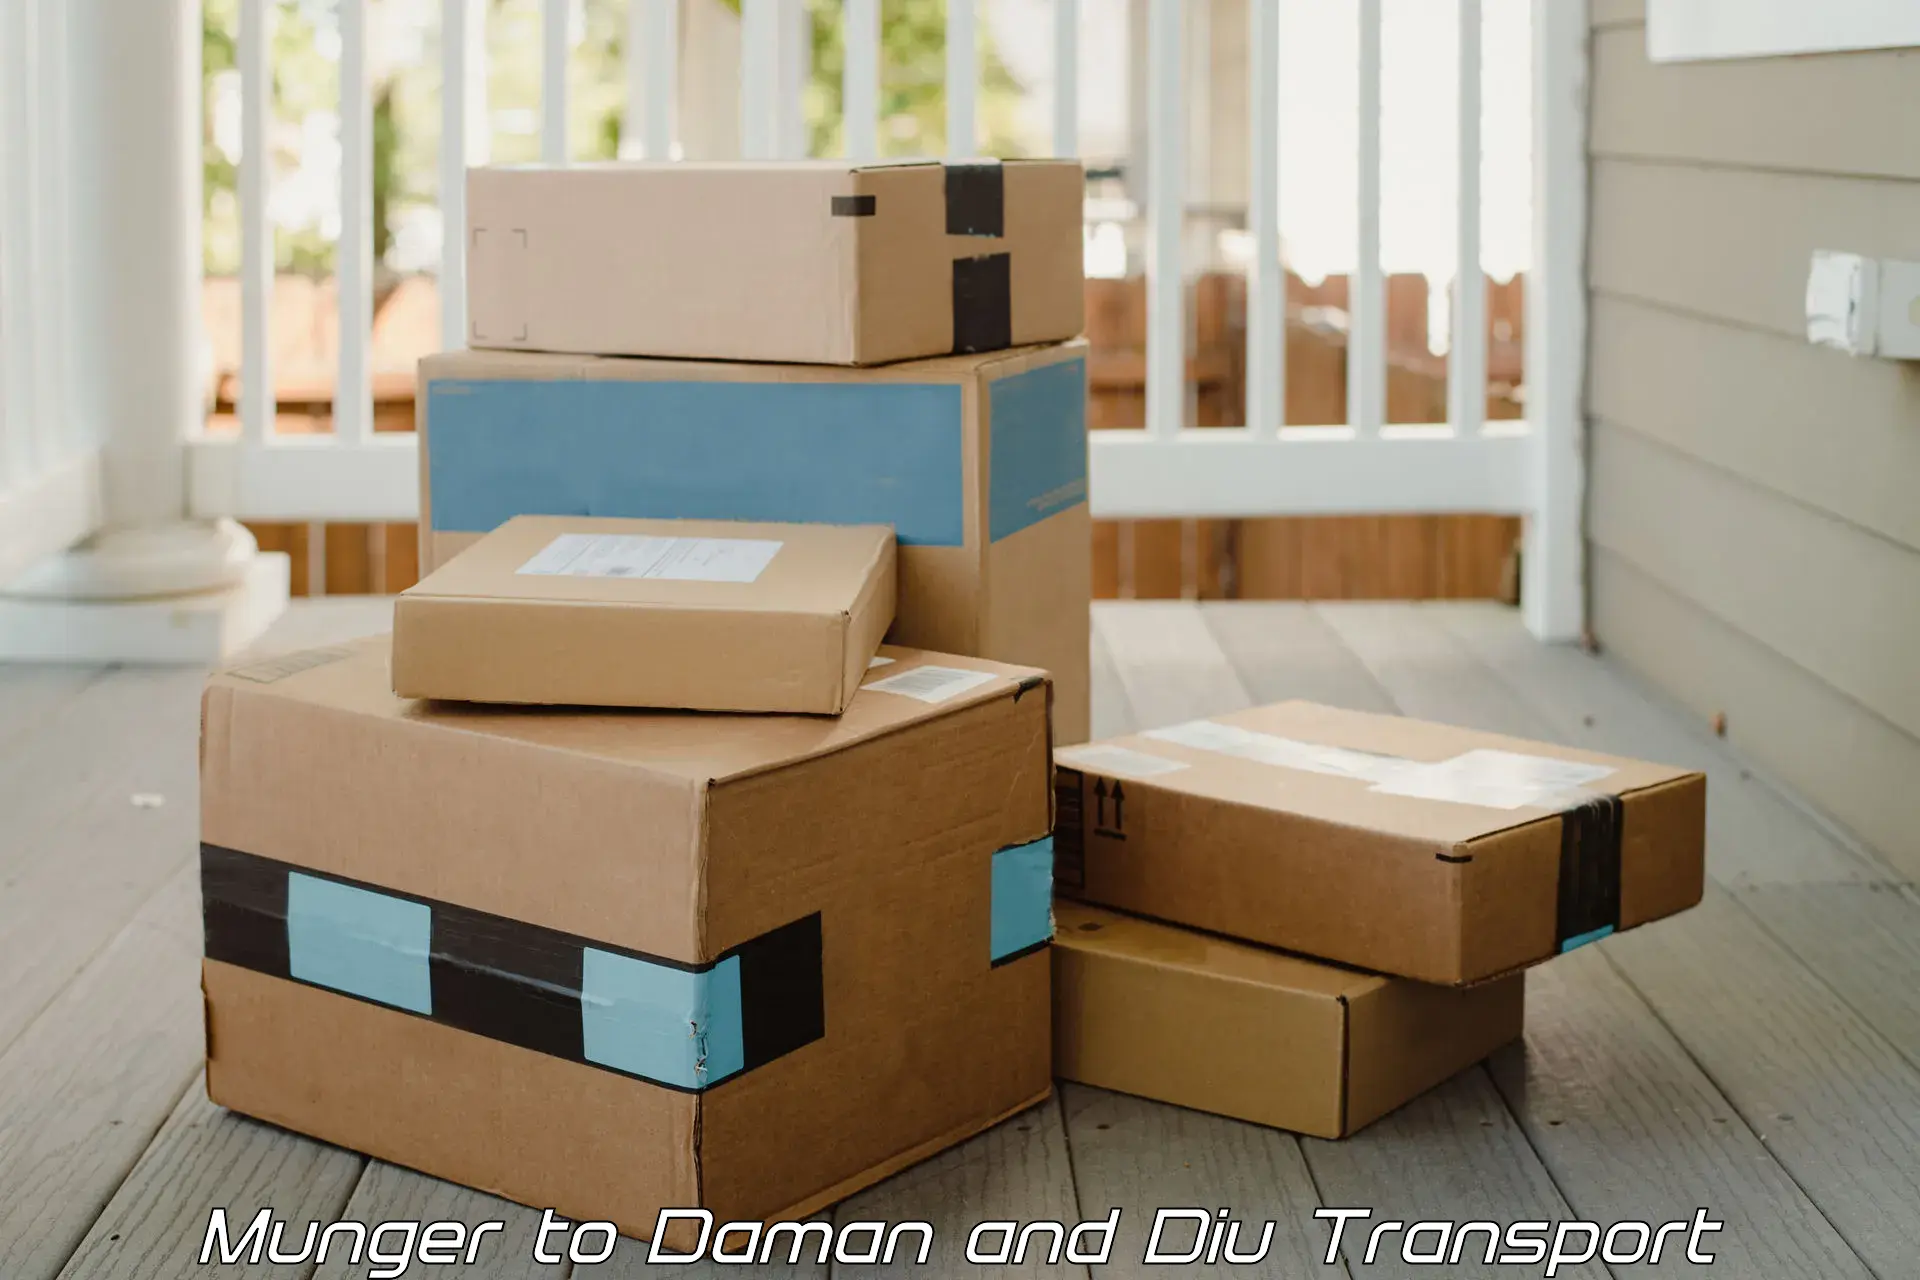 Pick up transport service Munger to Daman